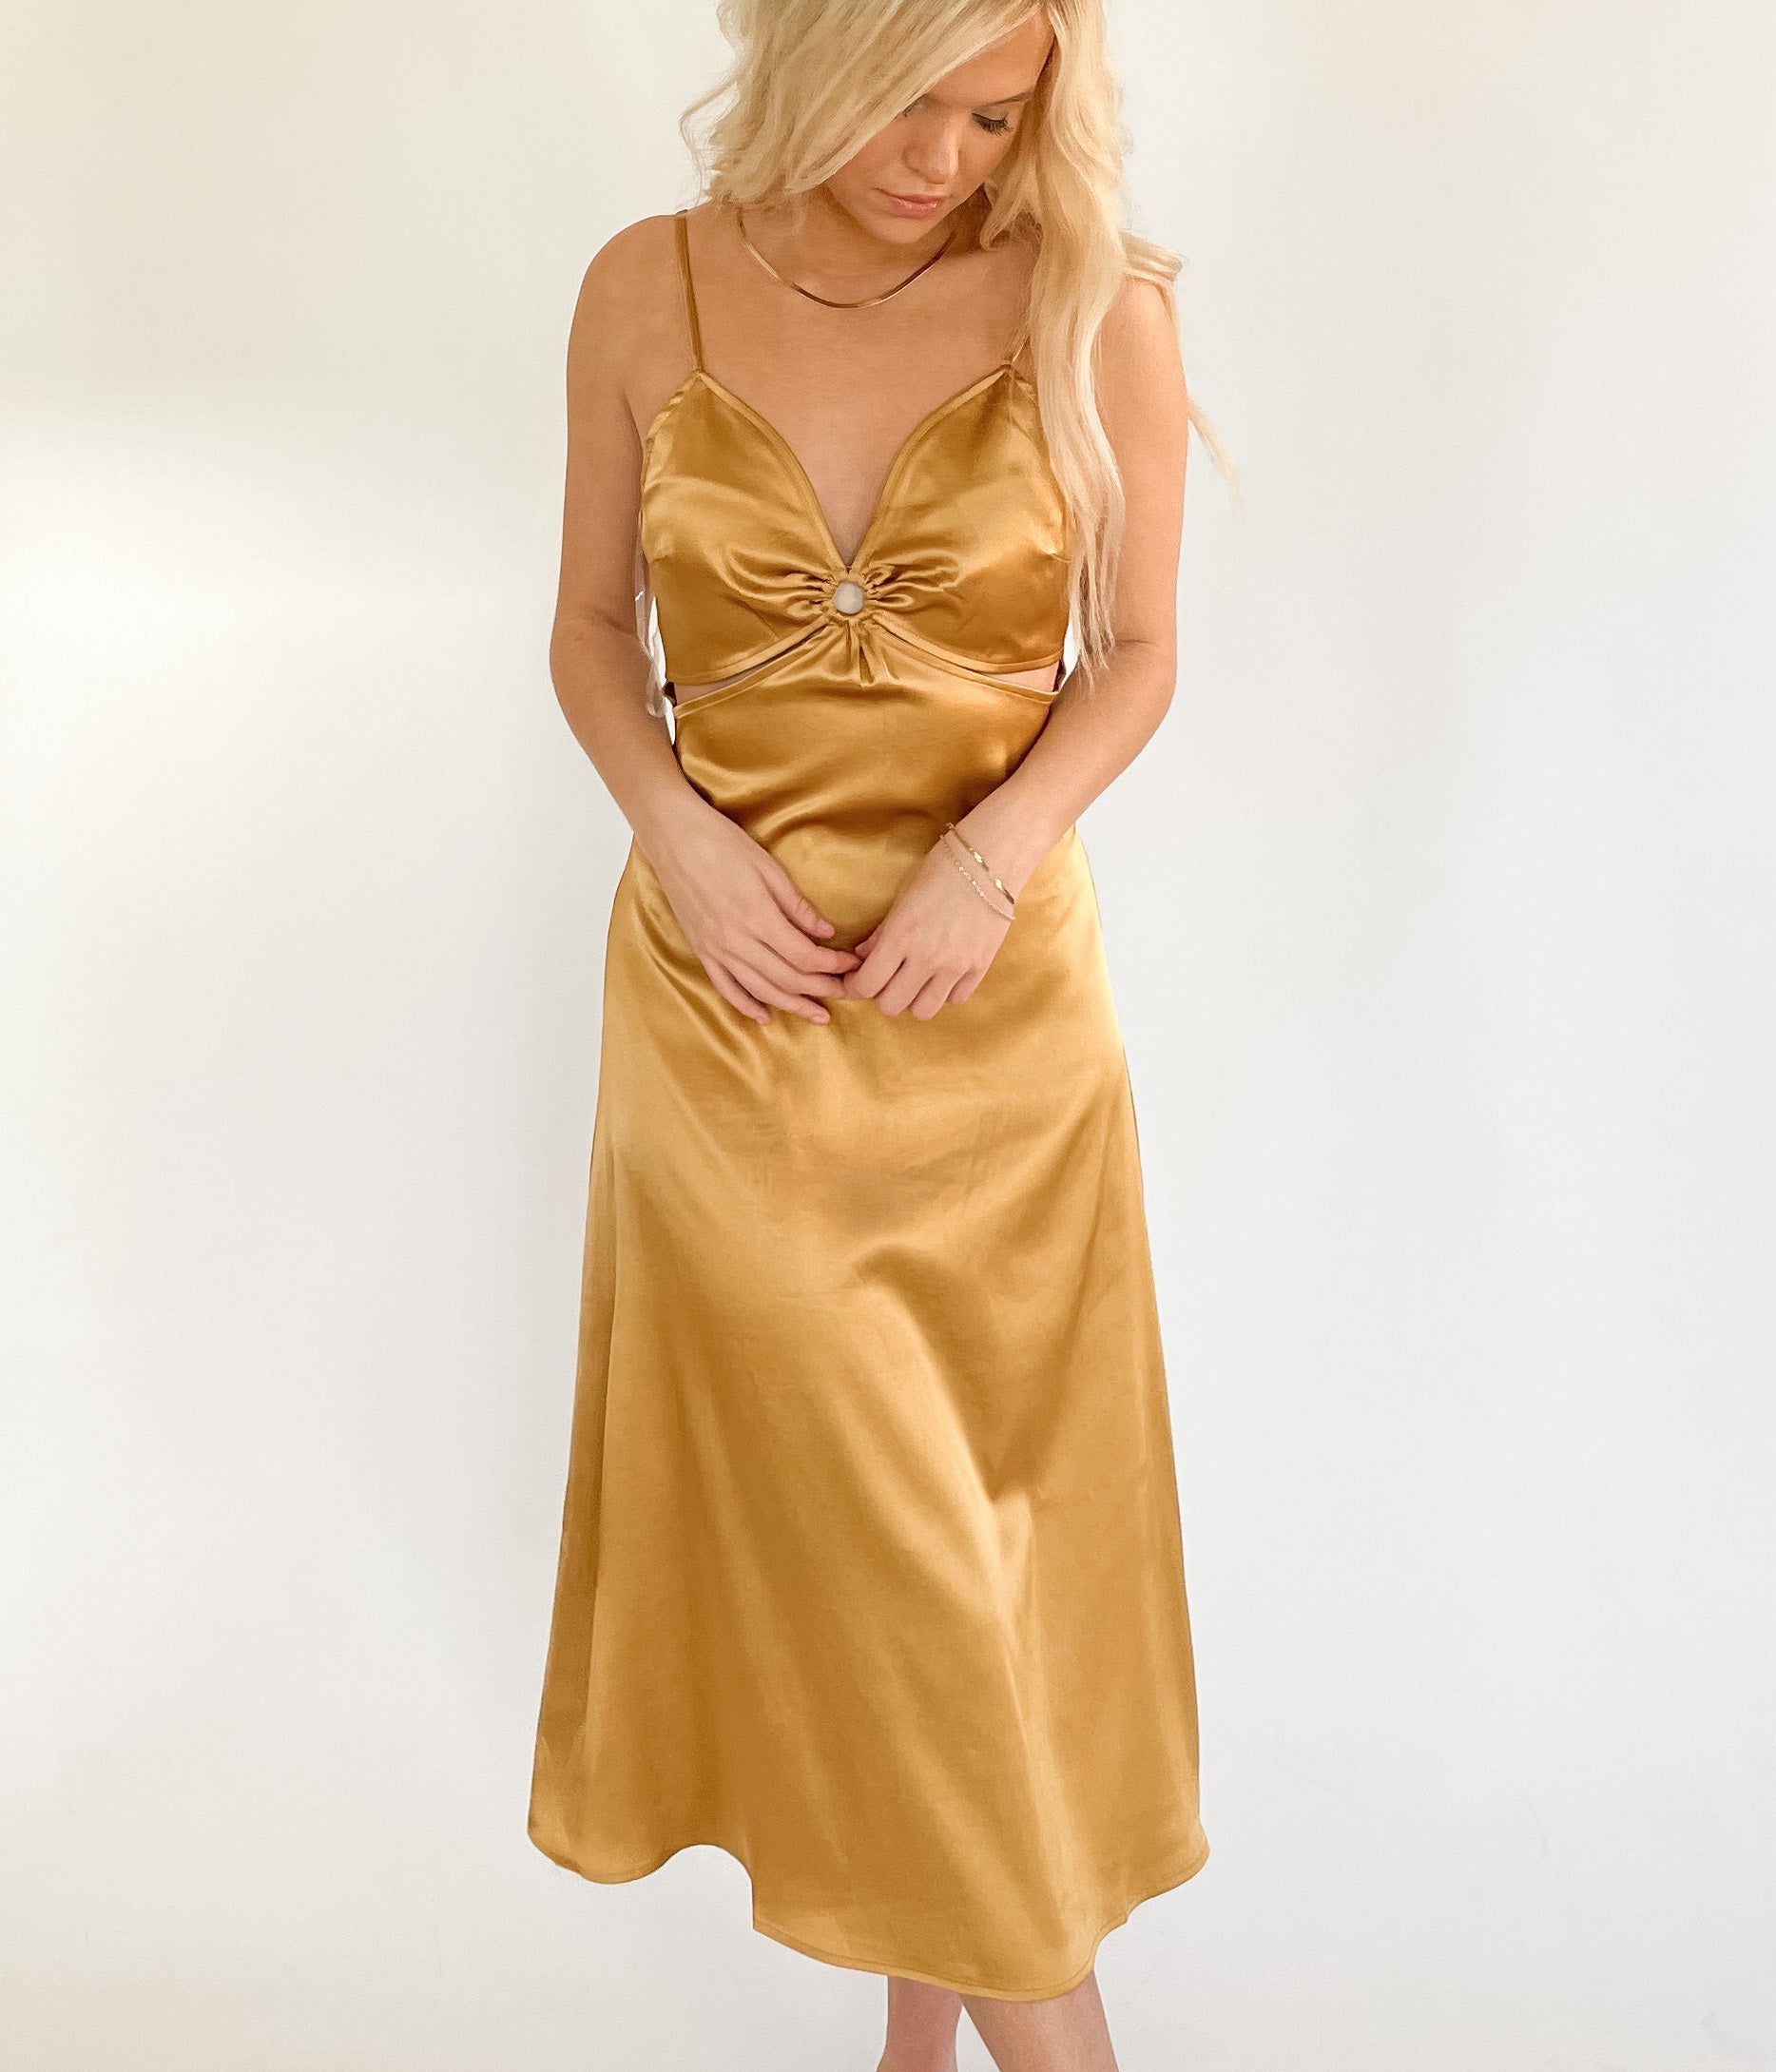 Golden Sun Dress